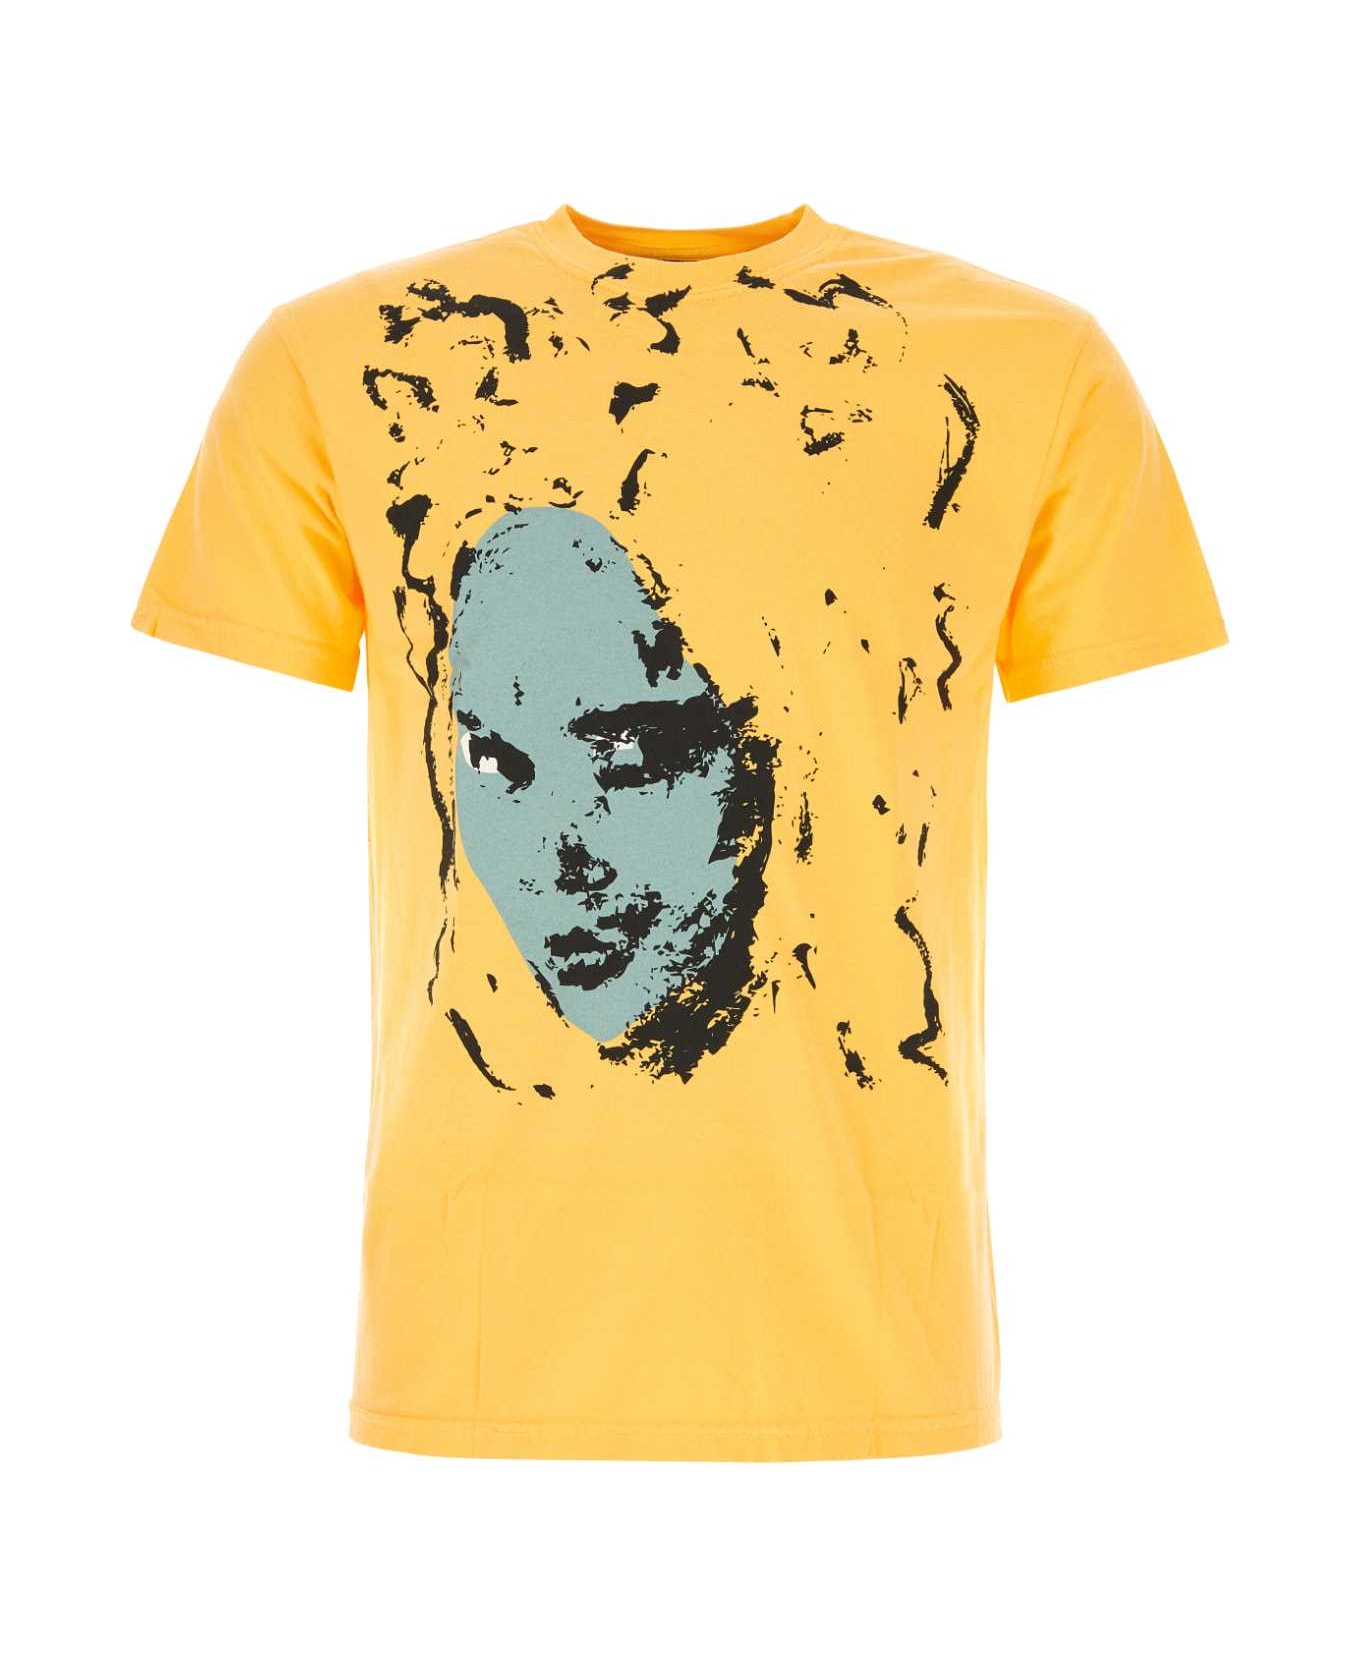 Kidsuper Yellow Cotton T-shirt - THECONARTISTORANGE シャツ